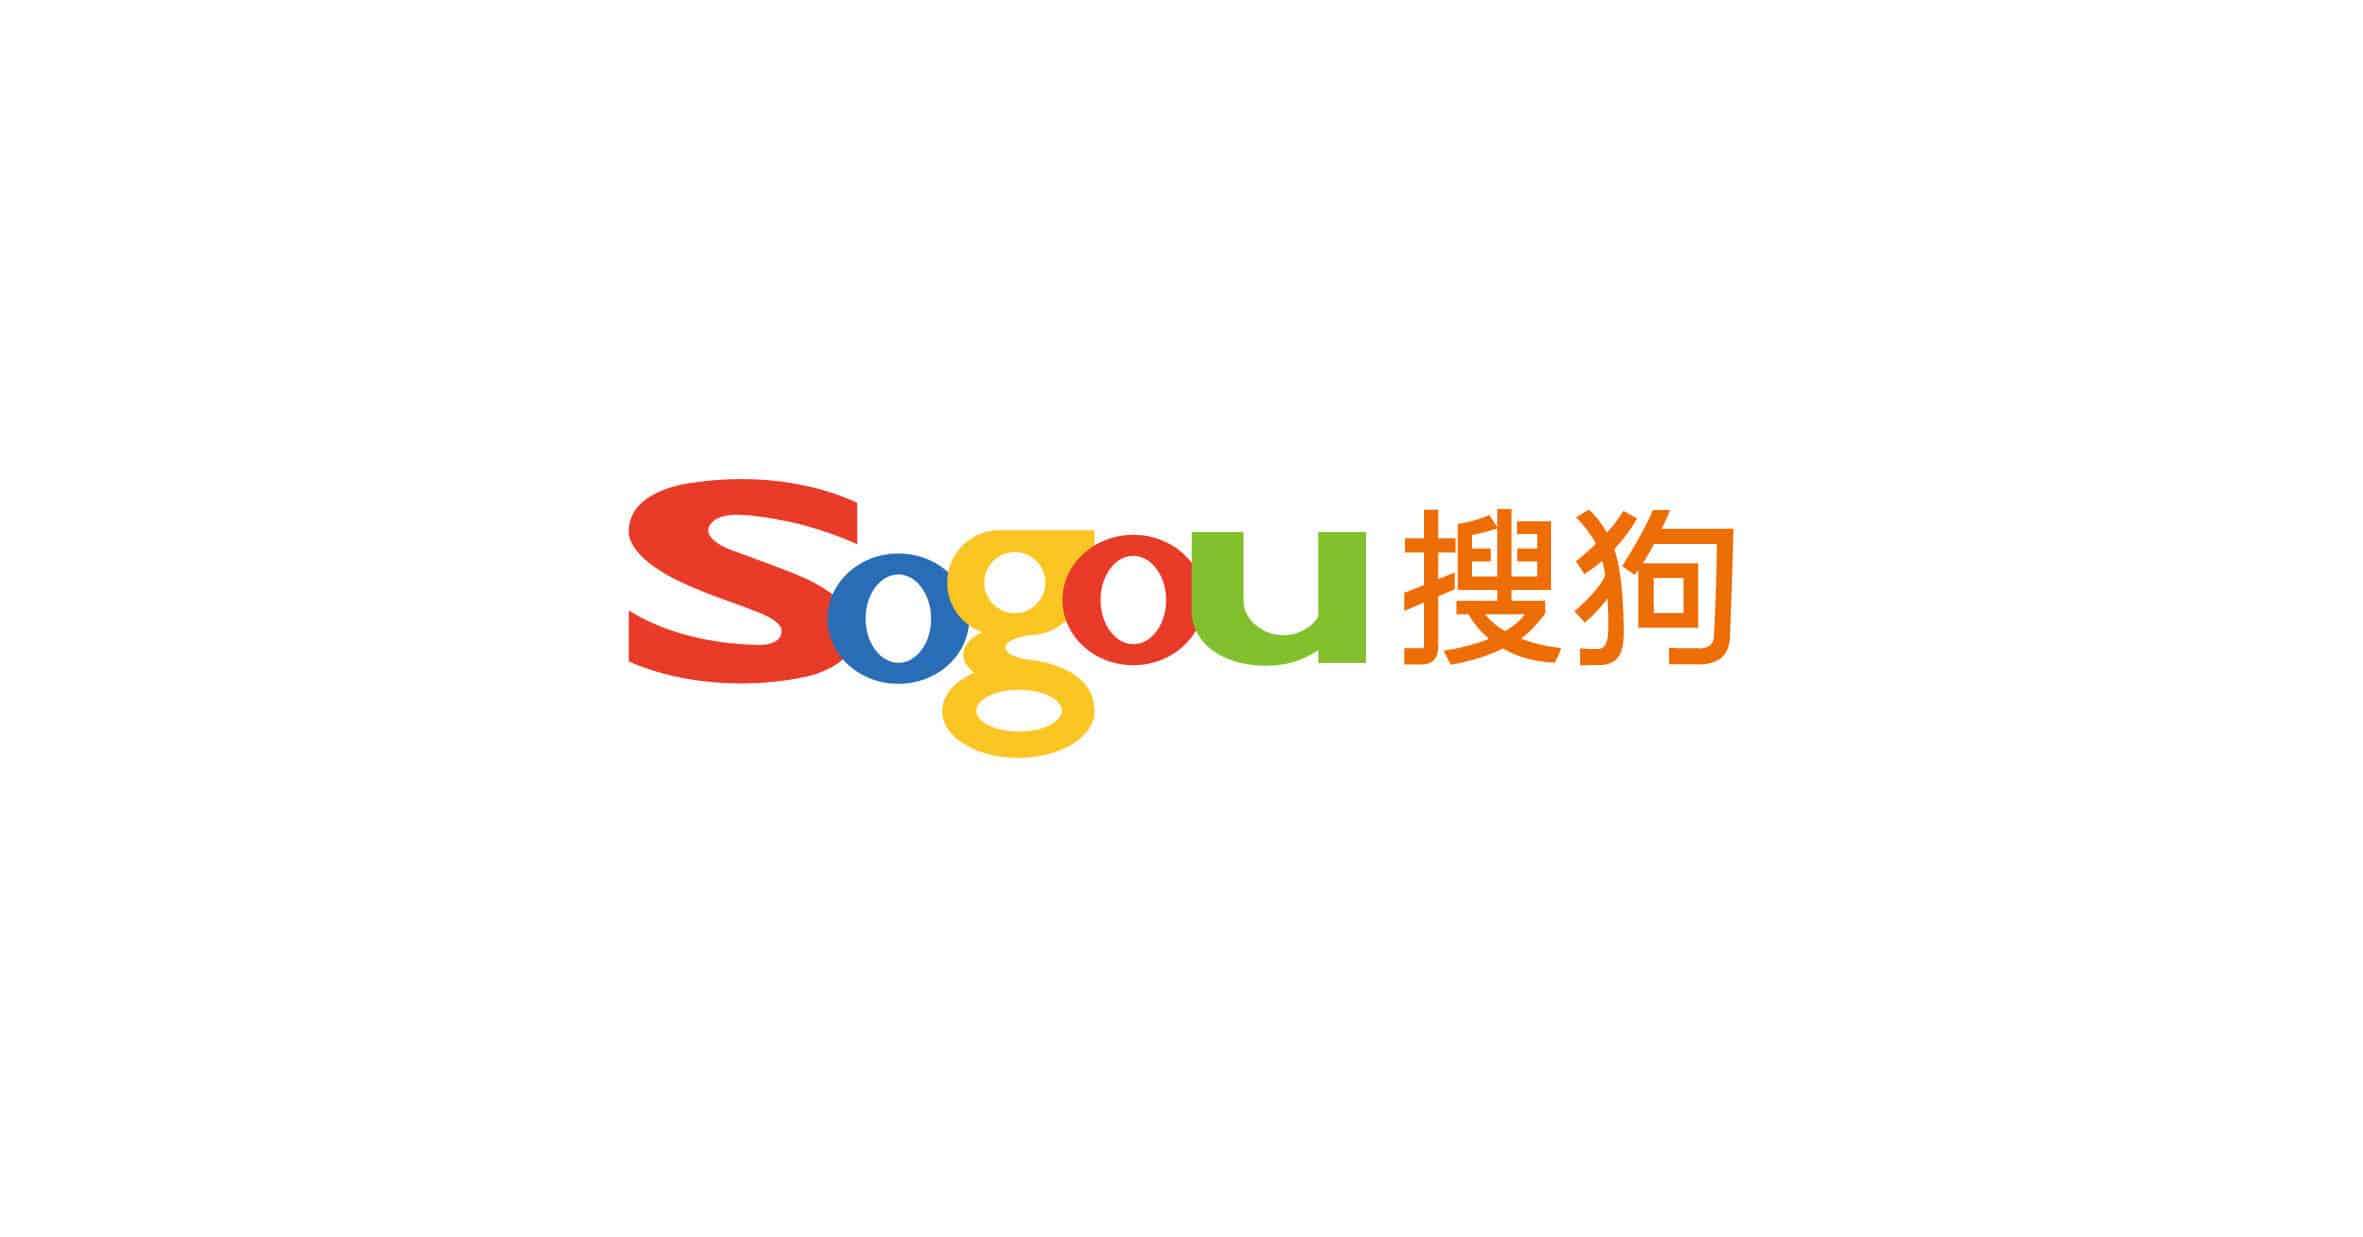 Aperçu du logo de Sogou.